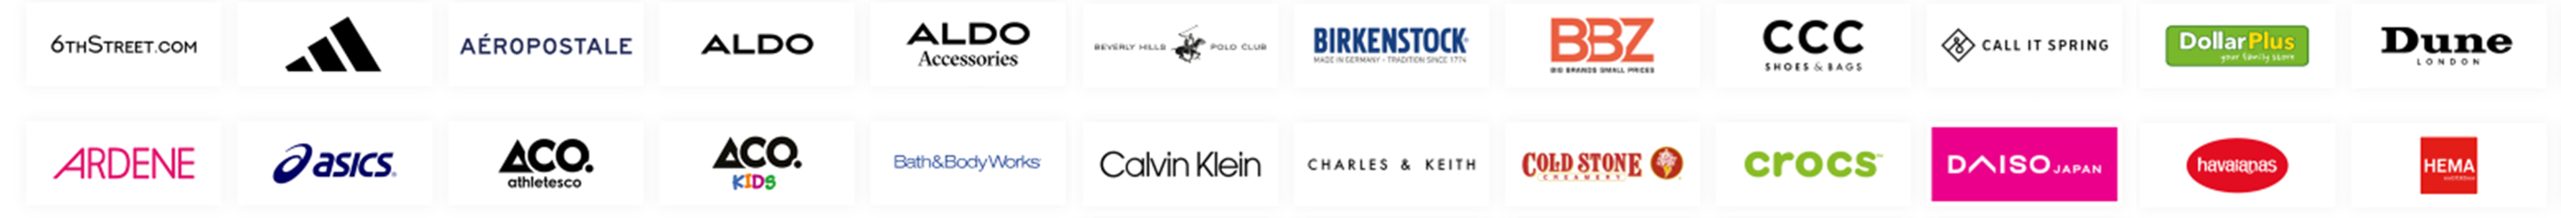 Apparel Group Brand Logos